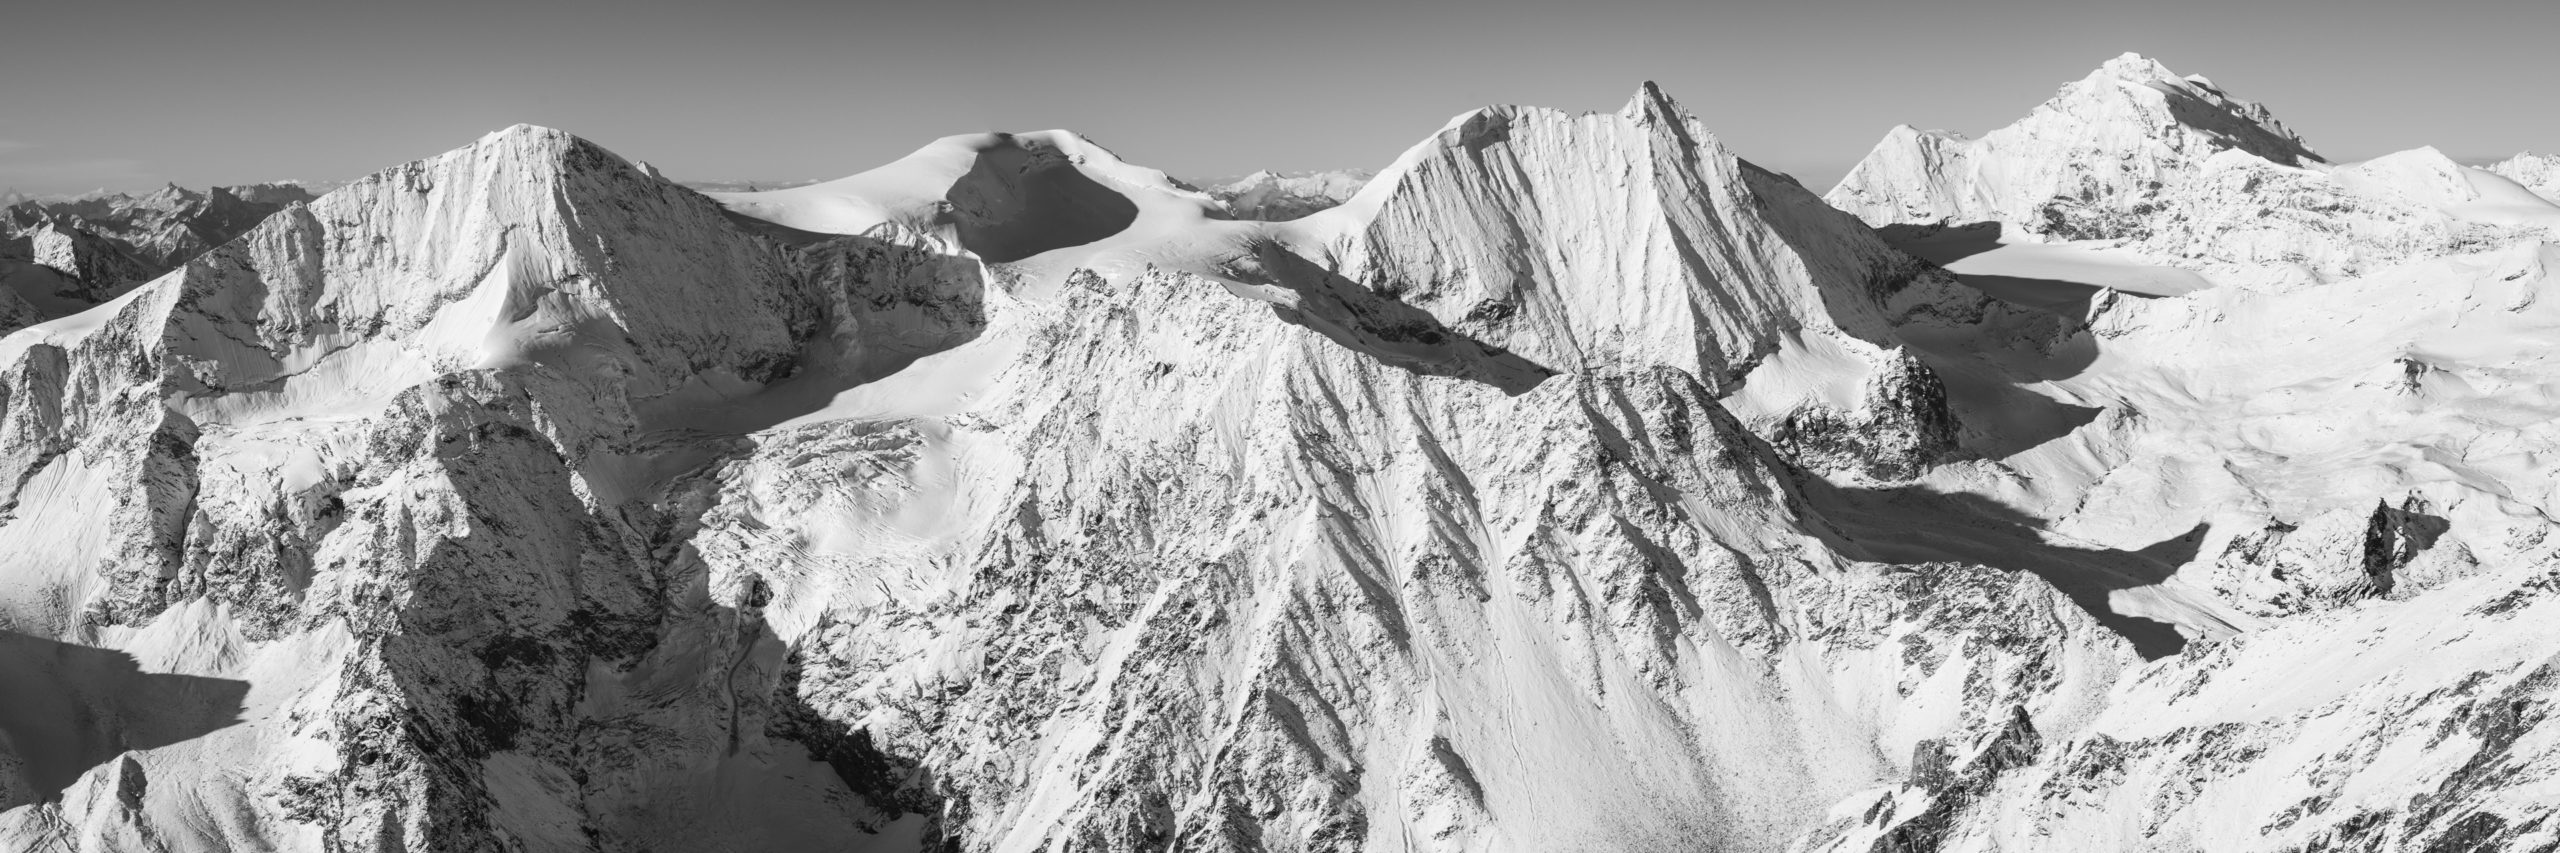 Arolla - Panorama montagne suisse en noir et blanc - encadrement photo